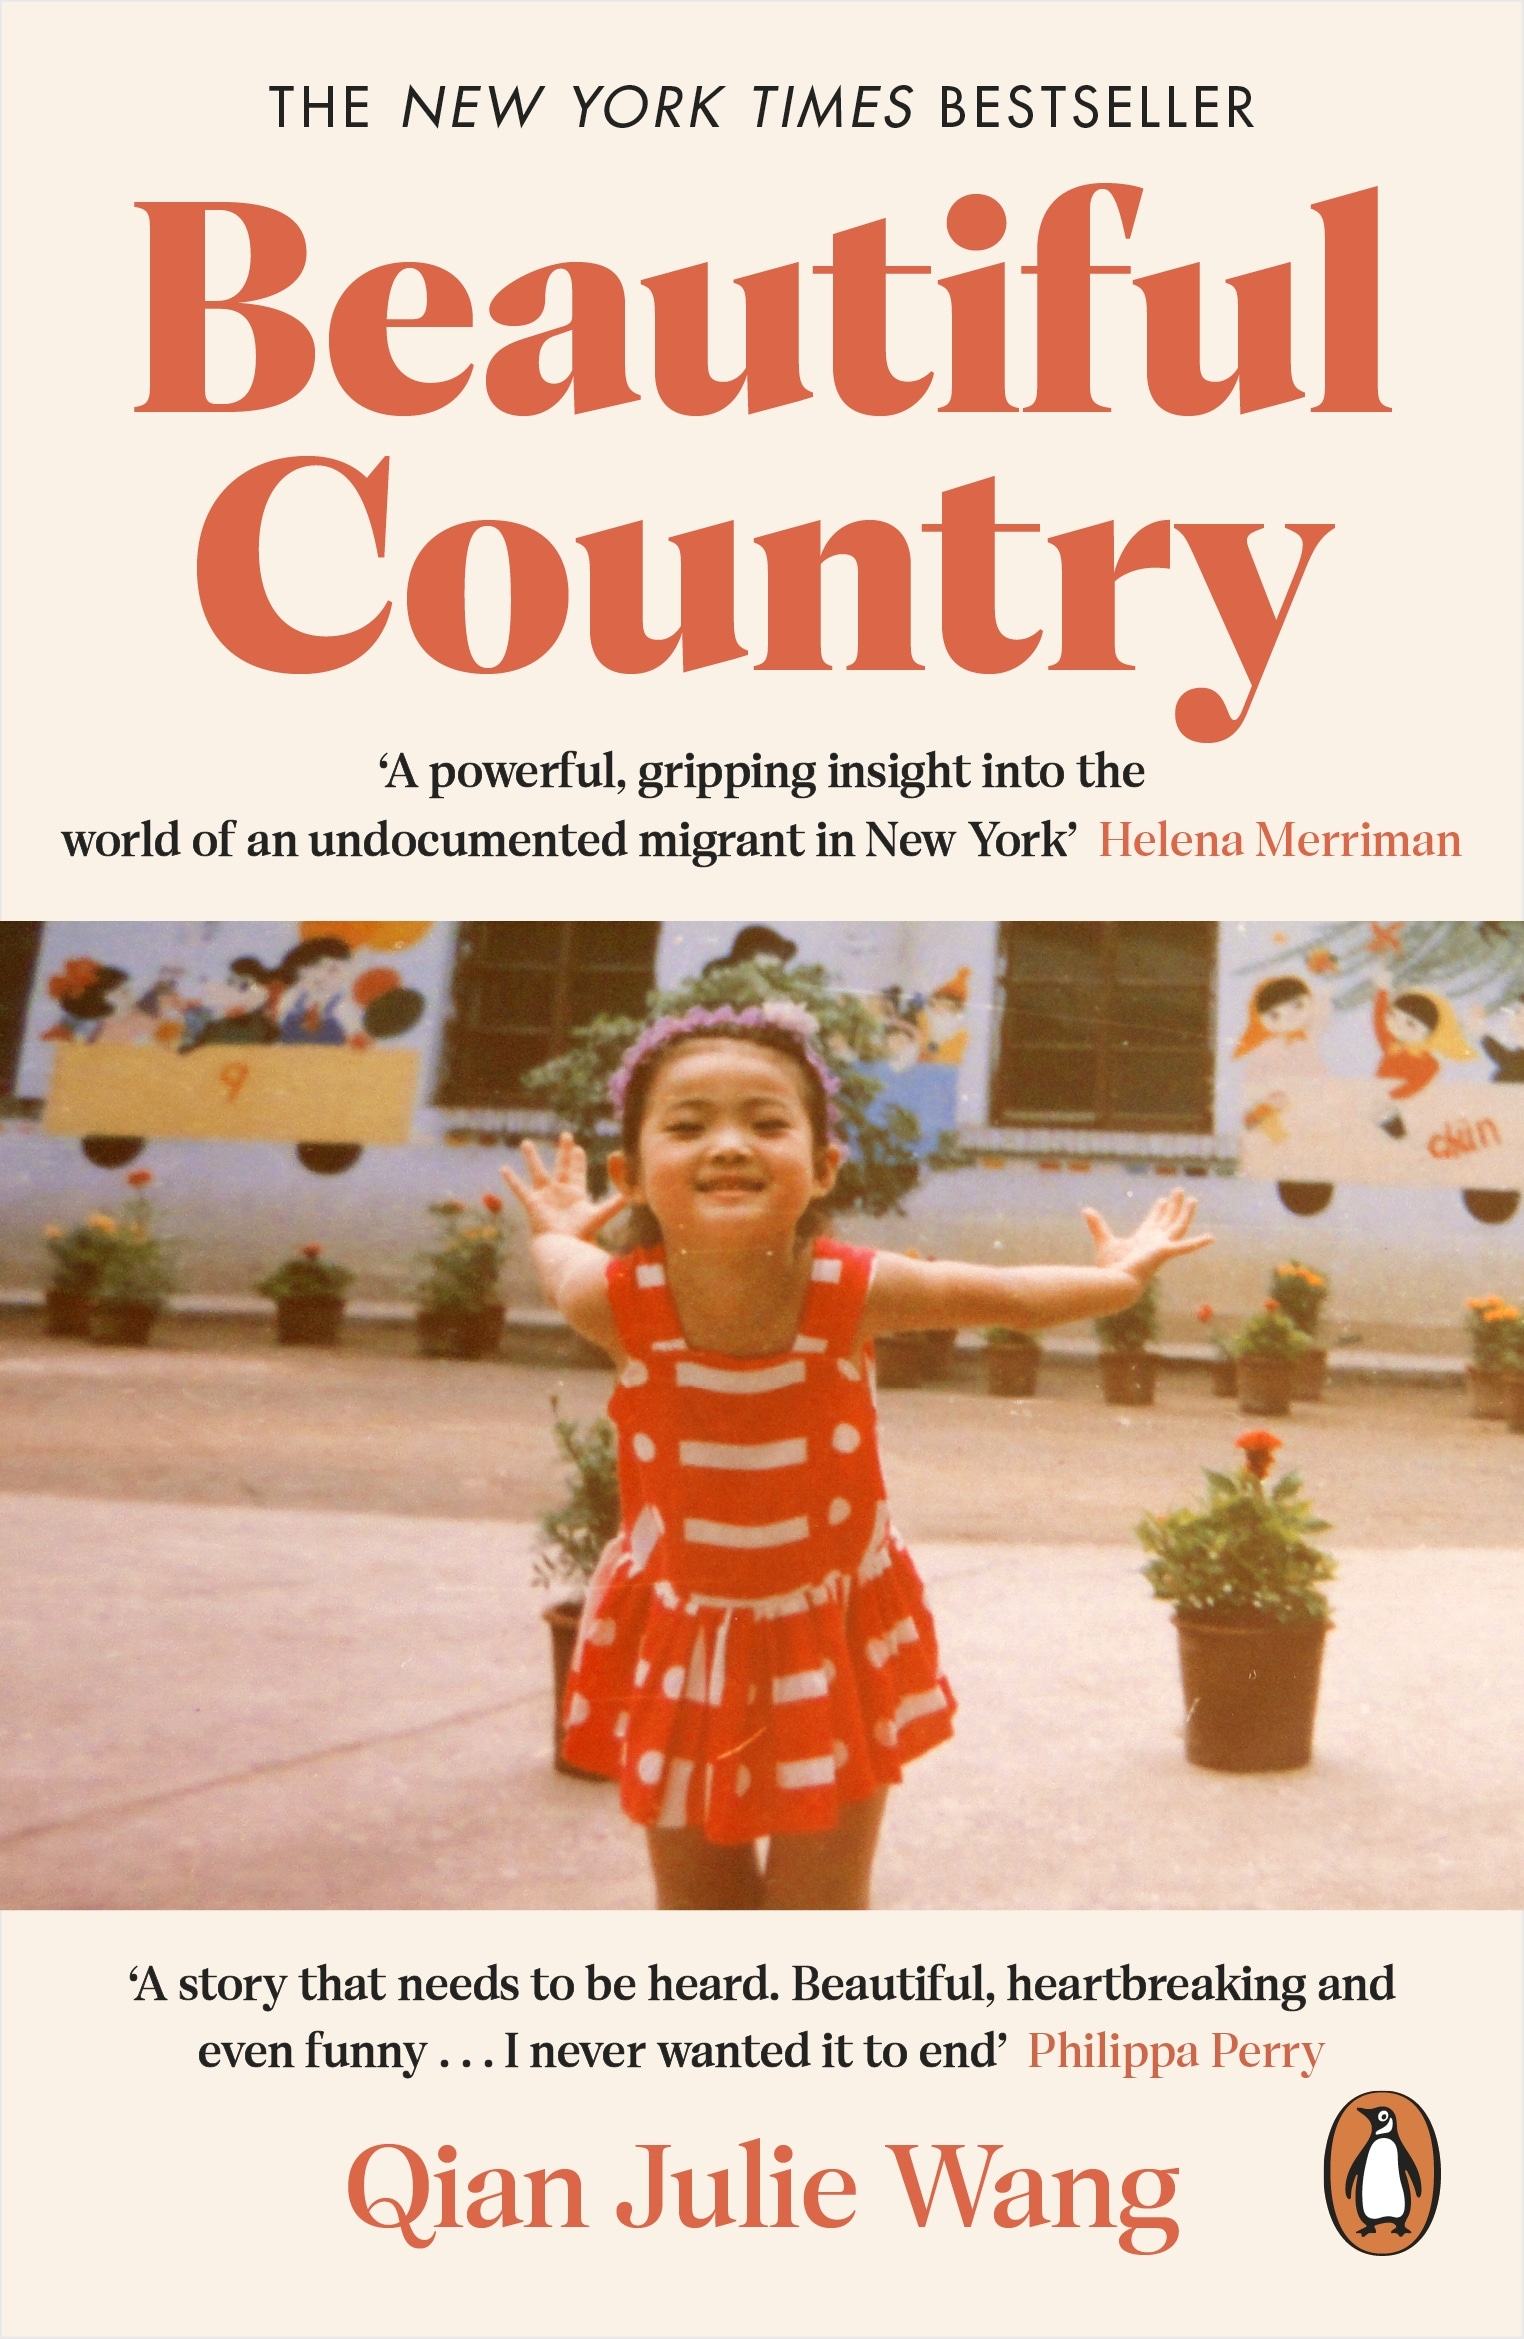 Book “Beautiful Country” by Qian Julie Wang — July 14, 2022